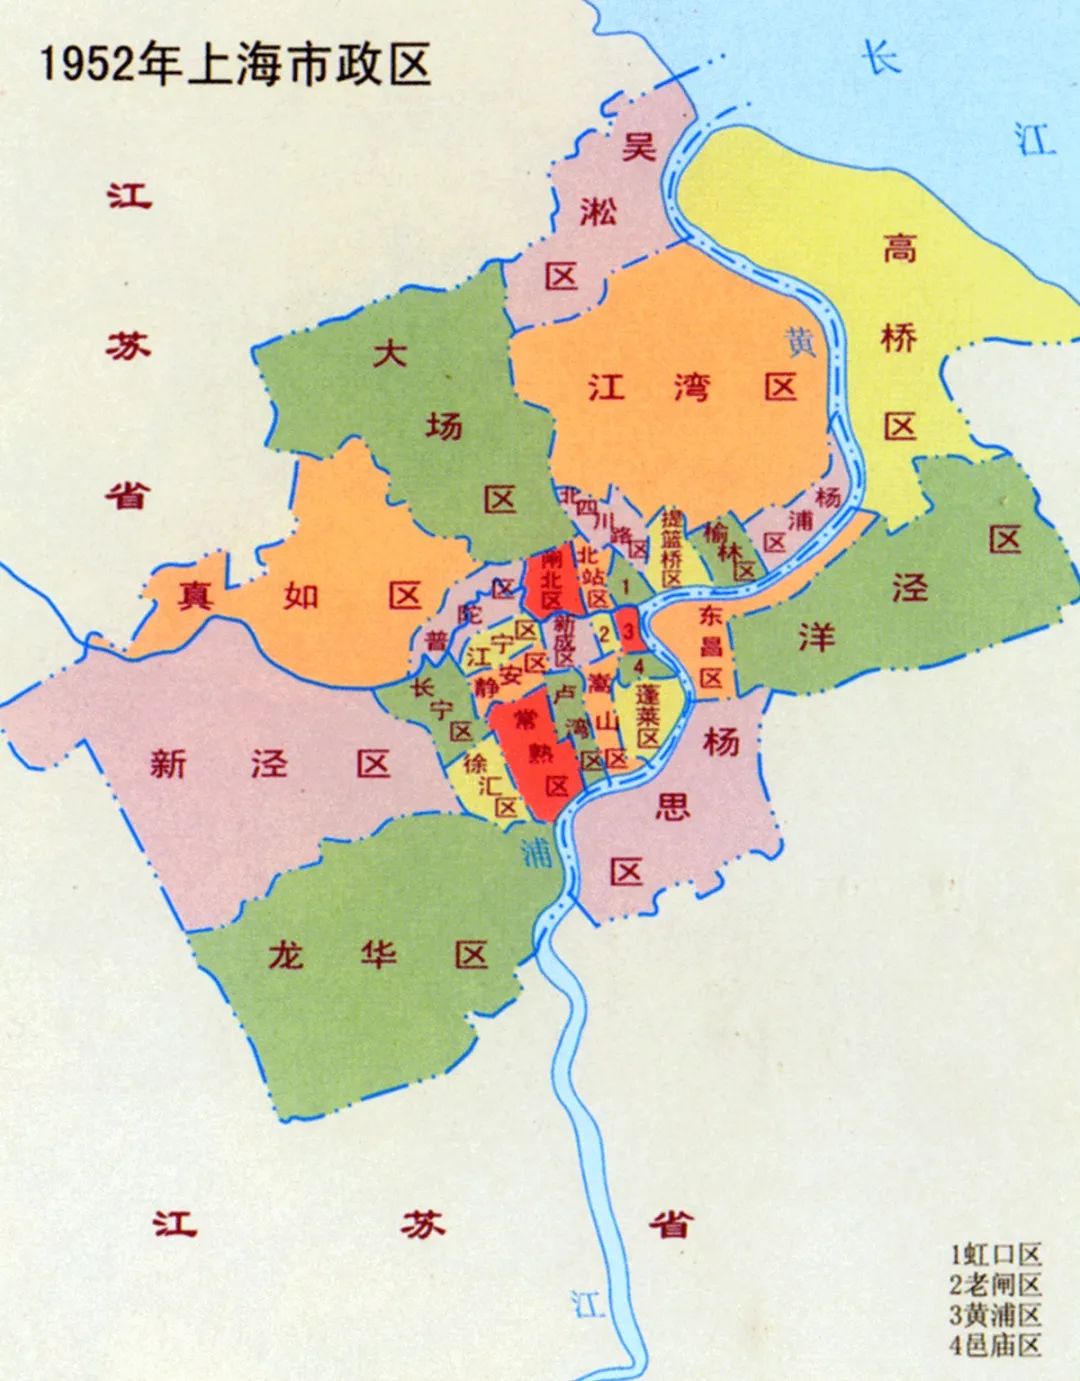 上海市人民政府着手大刀阔斧地调整行政区划分:1956年2月,老闸,嵩山